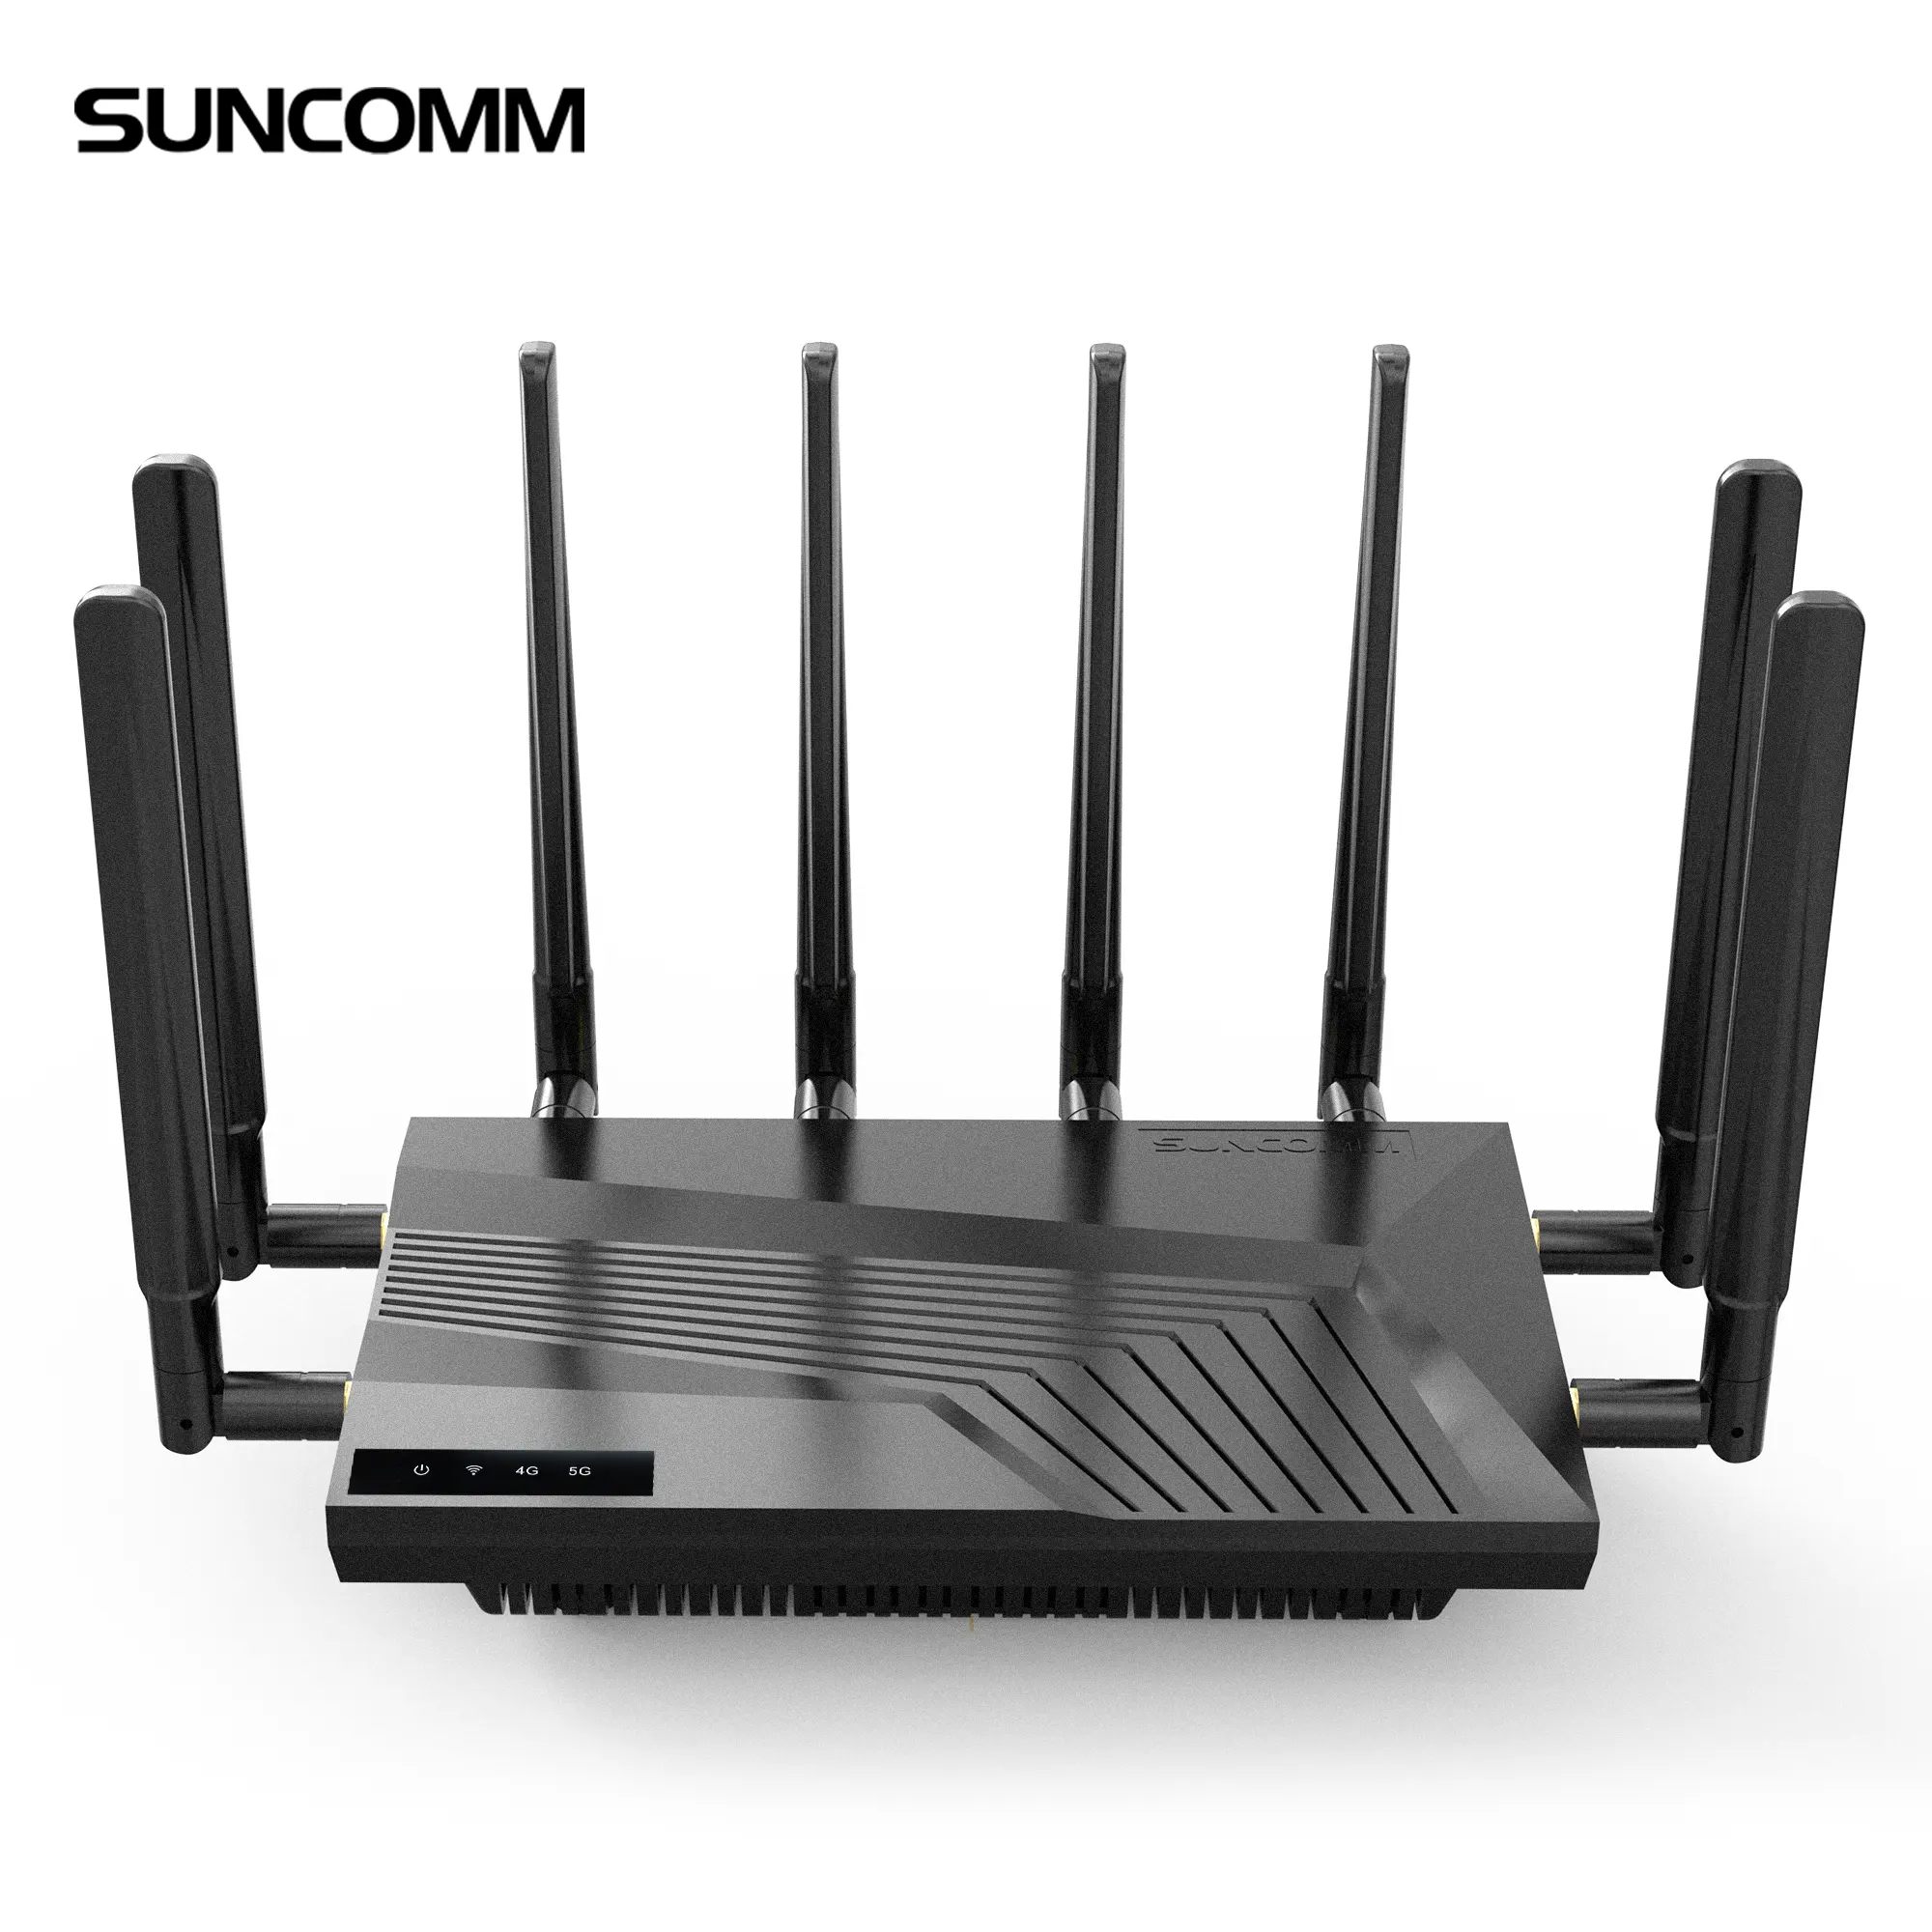 Nuovo router 5G con slot per sim card WiFi 6 antenna esterna internet ad alta velocità modem 5G per Home Enterprise SOHO